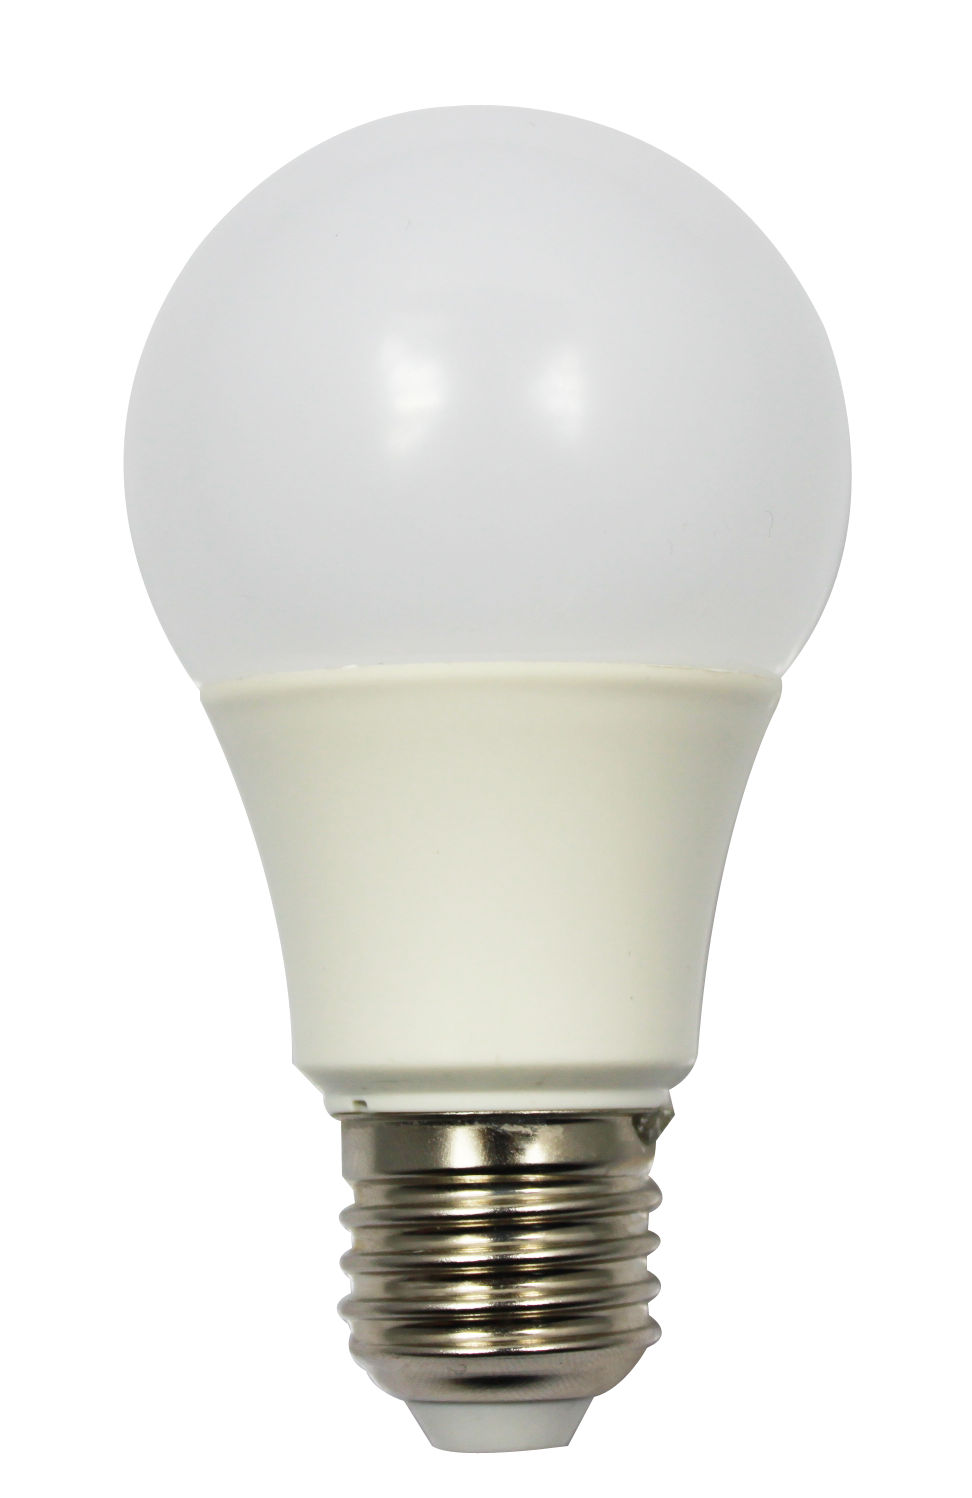 Incandescent light bulb LED lamp Light-emitting diode - bulb png